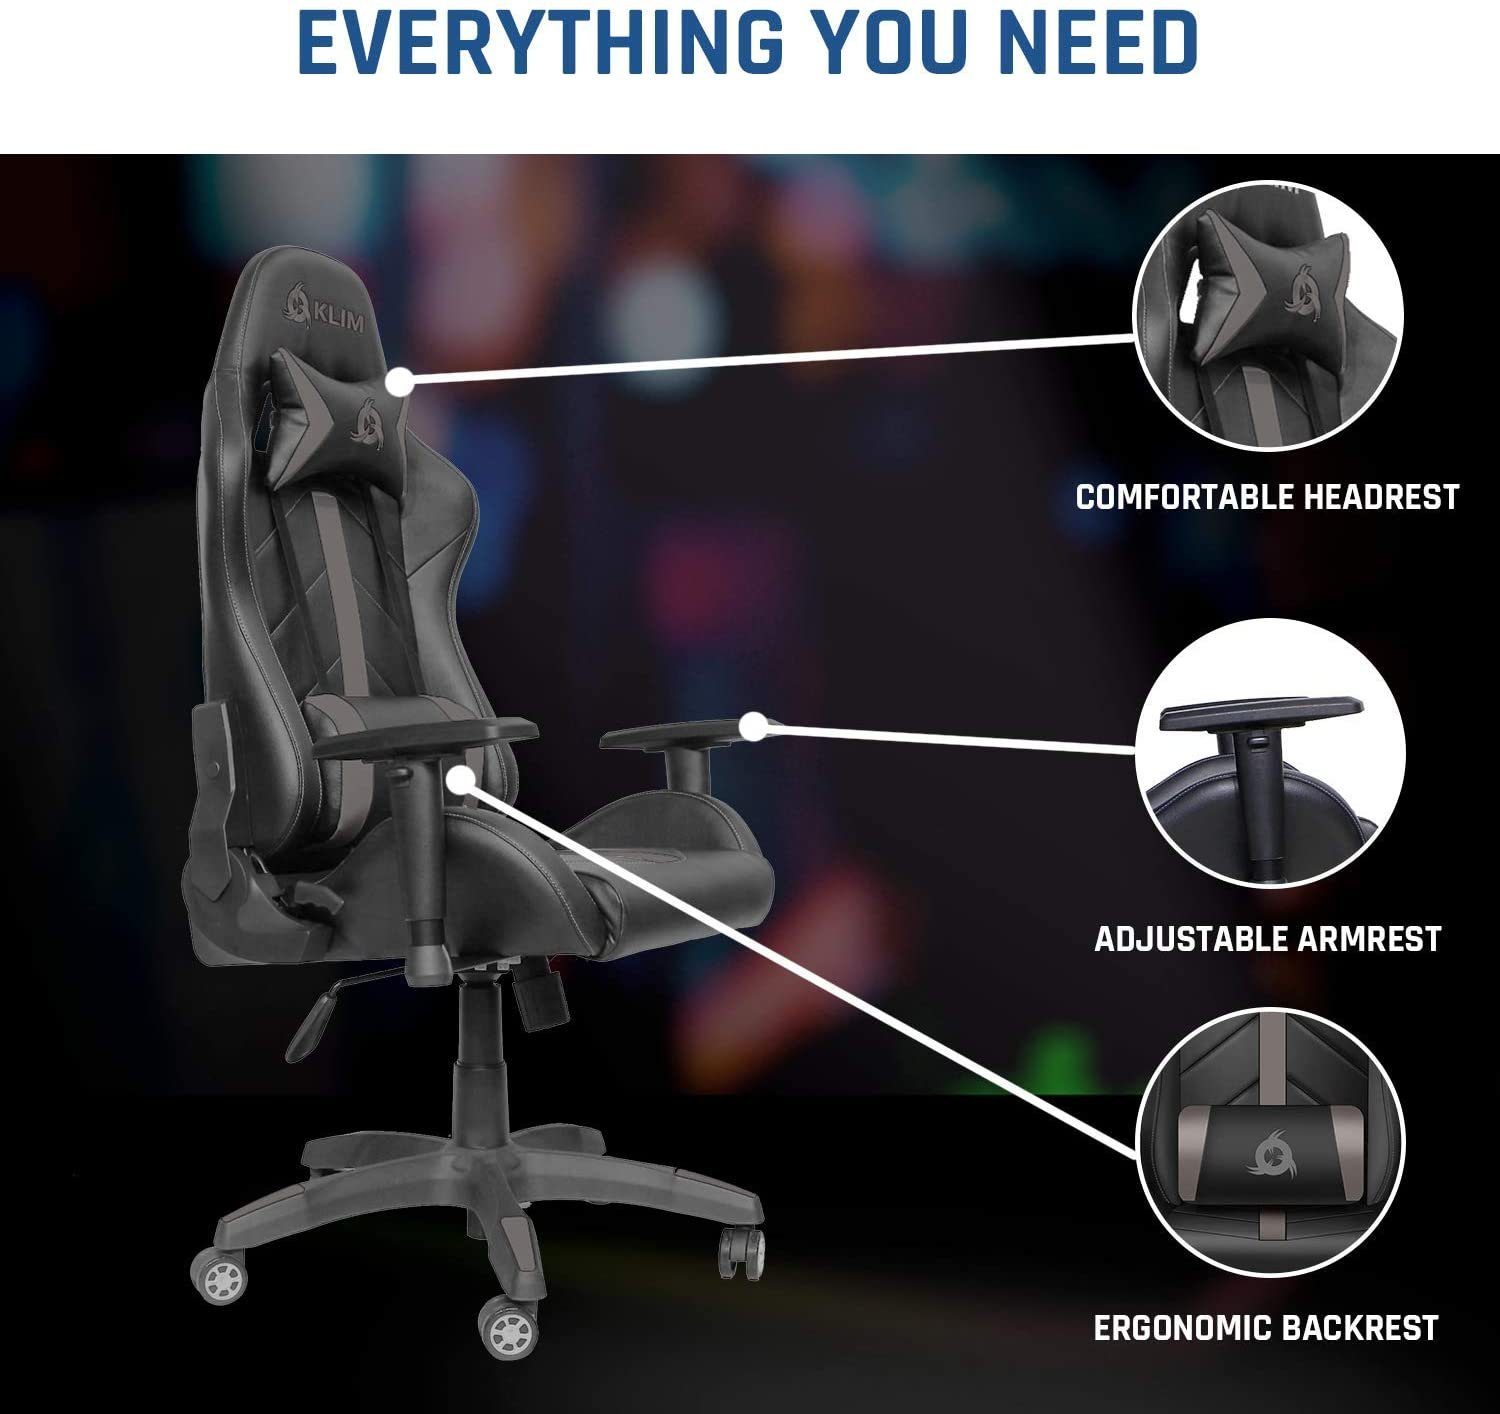 Gaming Stuhl Hochwertige Sitzmöglichkeit, Gaming Stuhl, fürs Gaming-Stuhl Grau Qualität, Ergonomischer Stylischer 1st KLIM